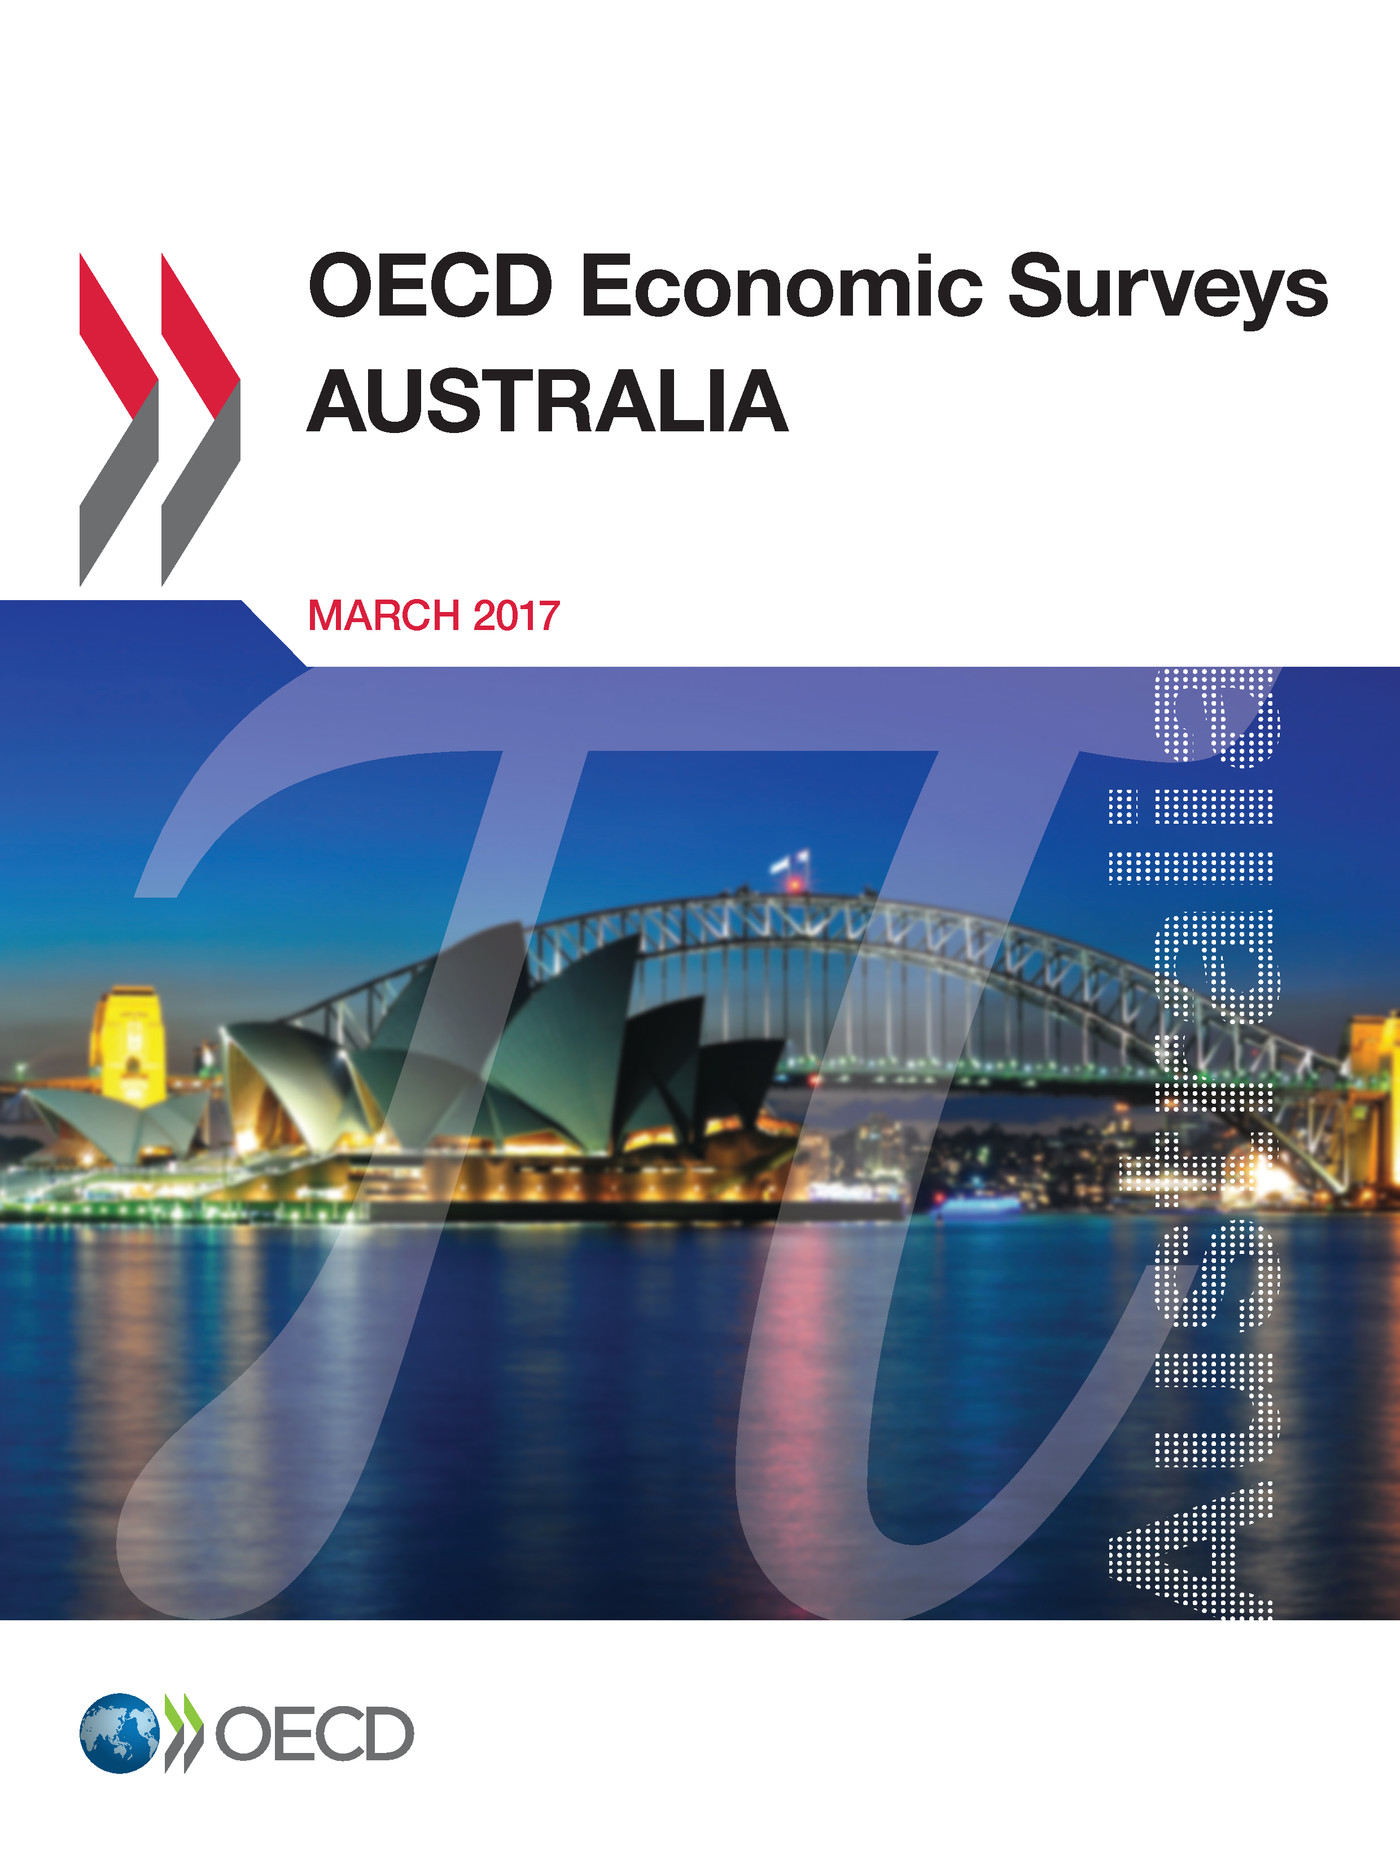 OECD Economic Surveys: Australia 2017 -  Collectif - OCDE / OECD